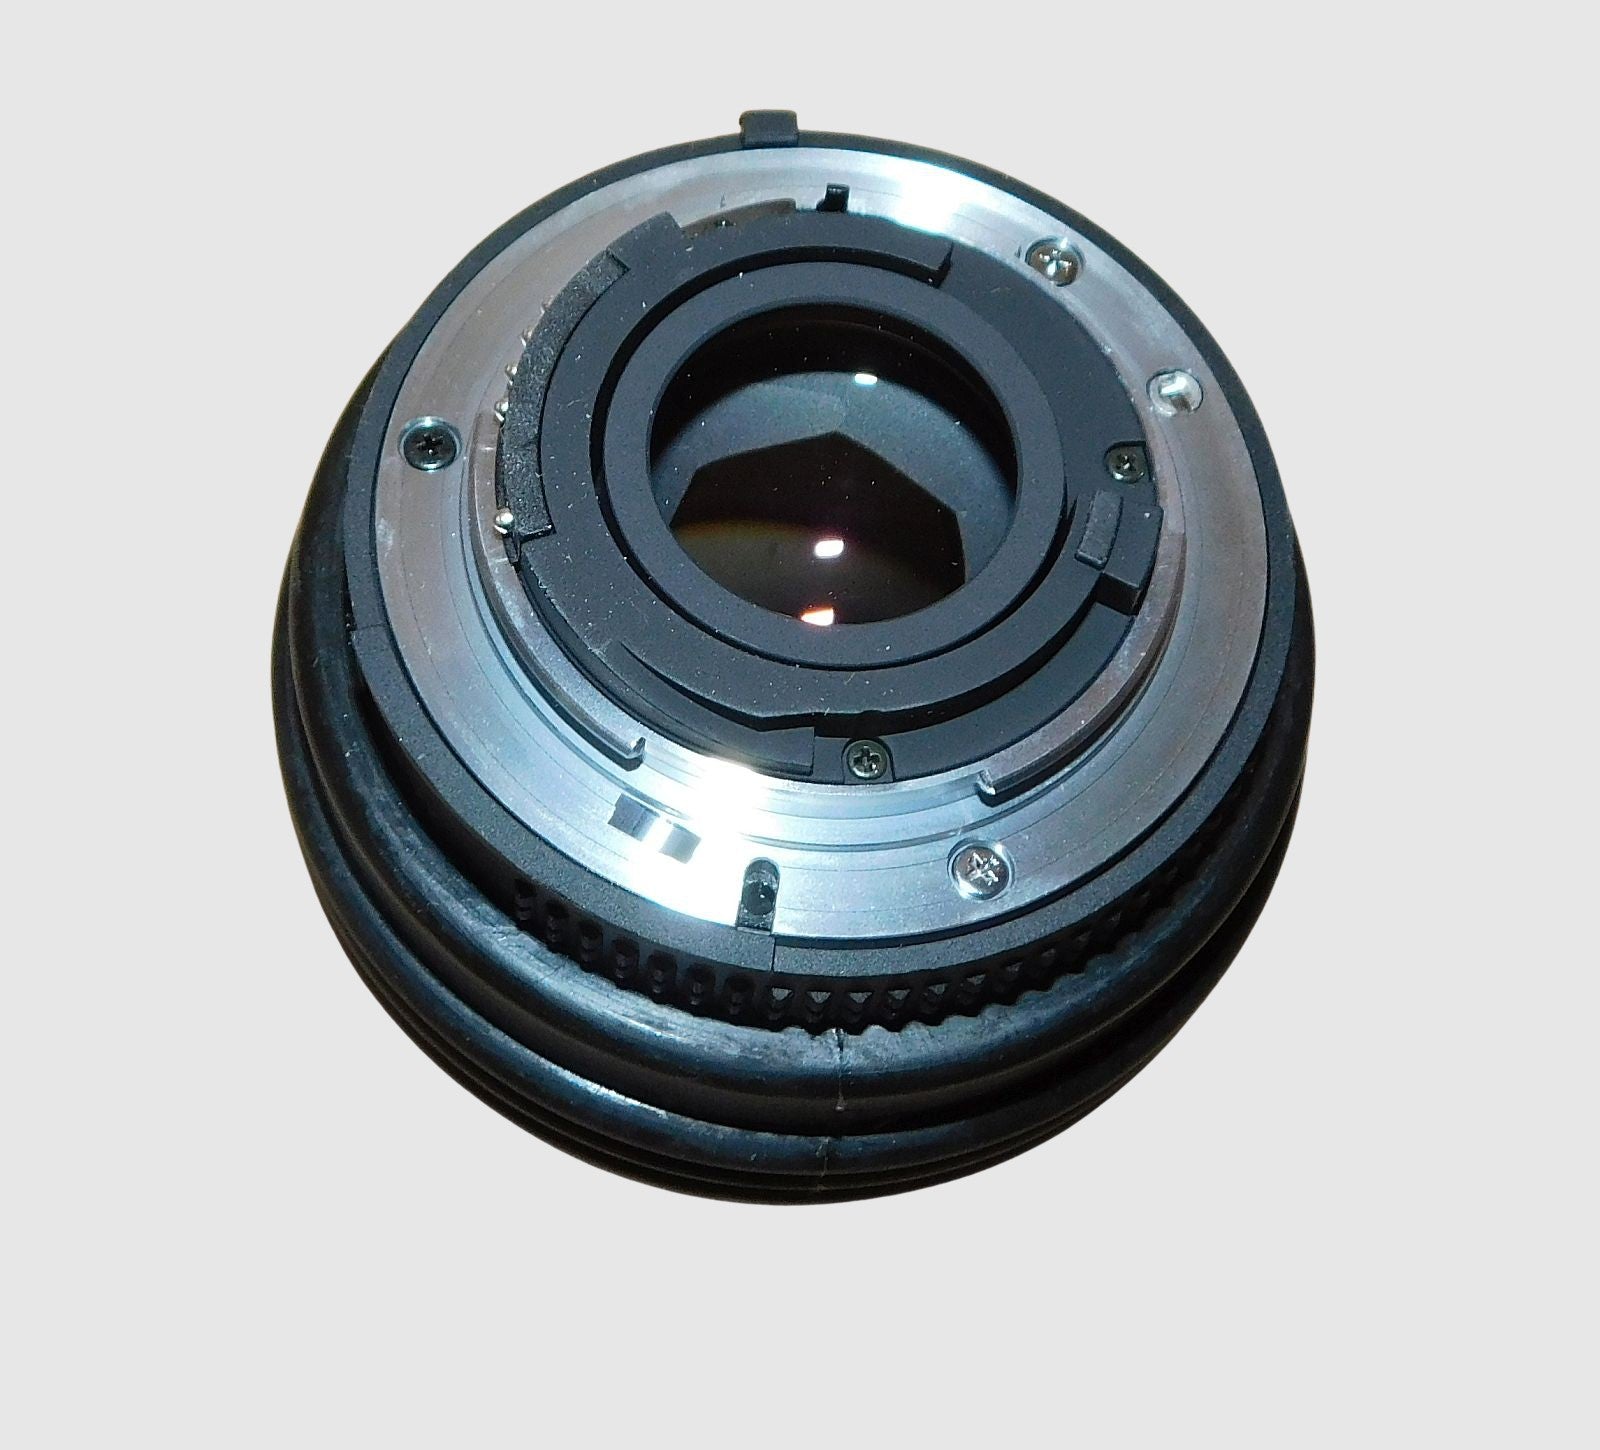 Melles Griot 59 LGB 450 Invaritar 50mm 1:1.18 D AF Nikkor Nikon Lens F Mount